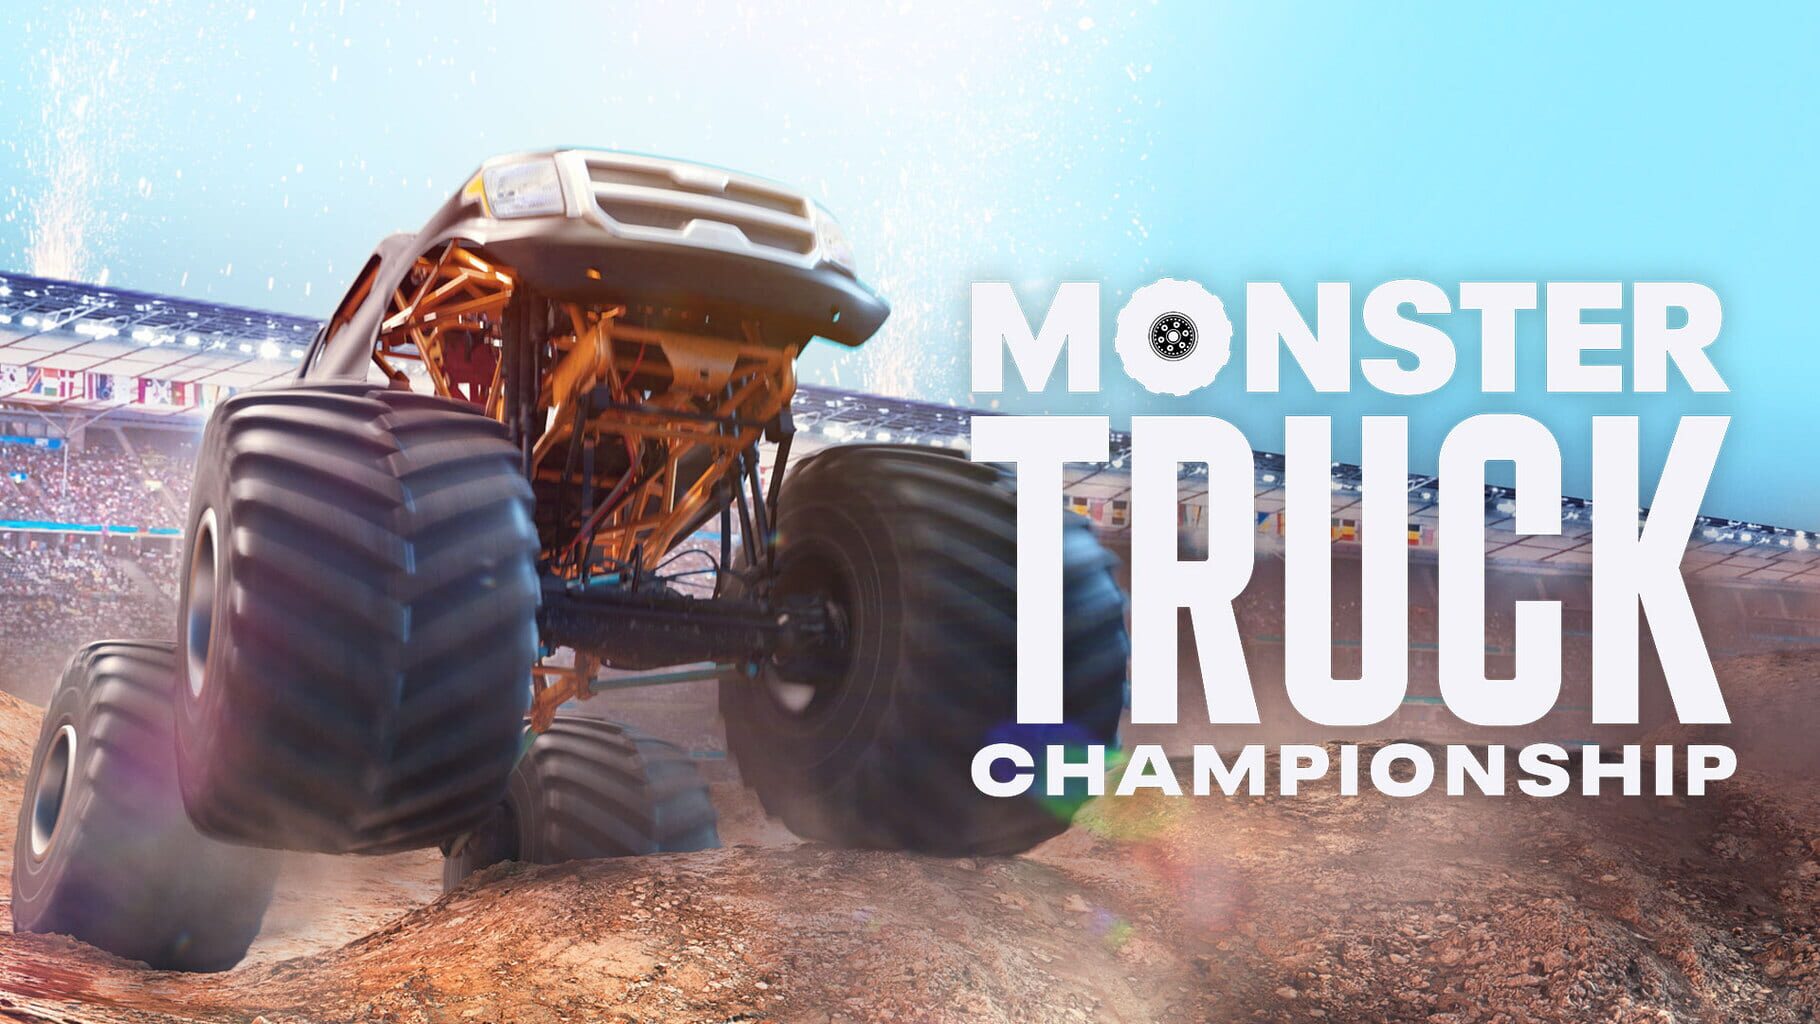 Artwork for Monster Truck Championship